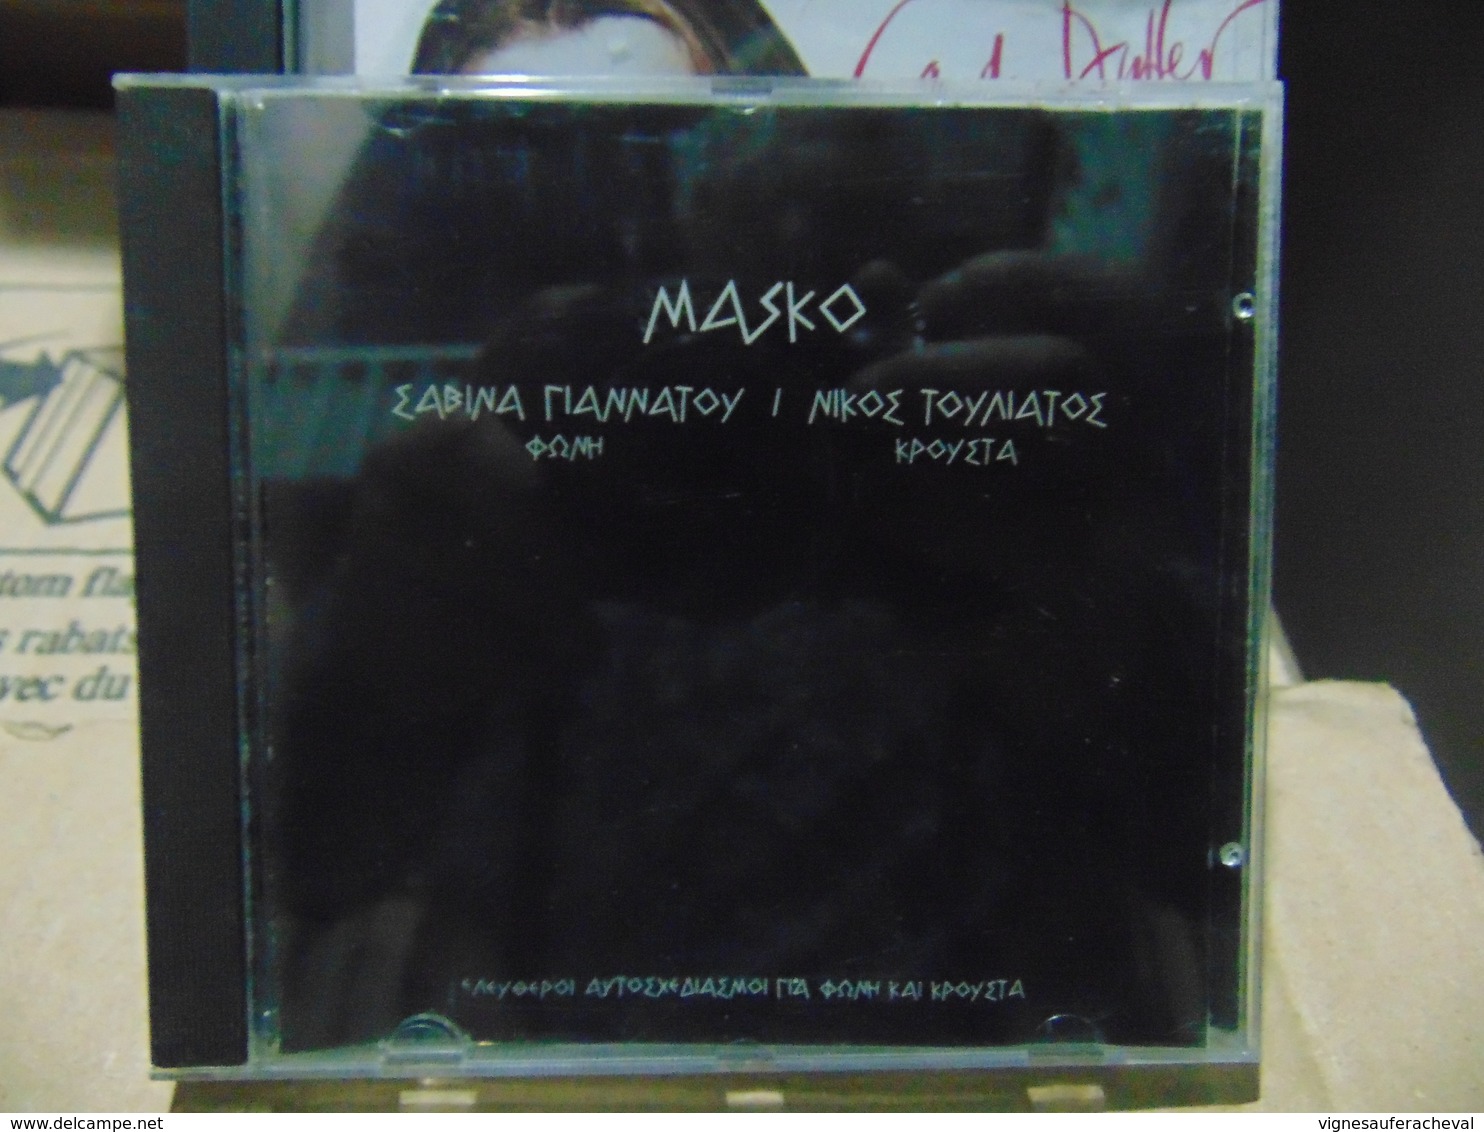 Masko-nikoe & Sabina - World Music